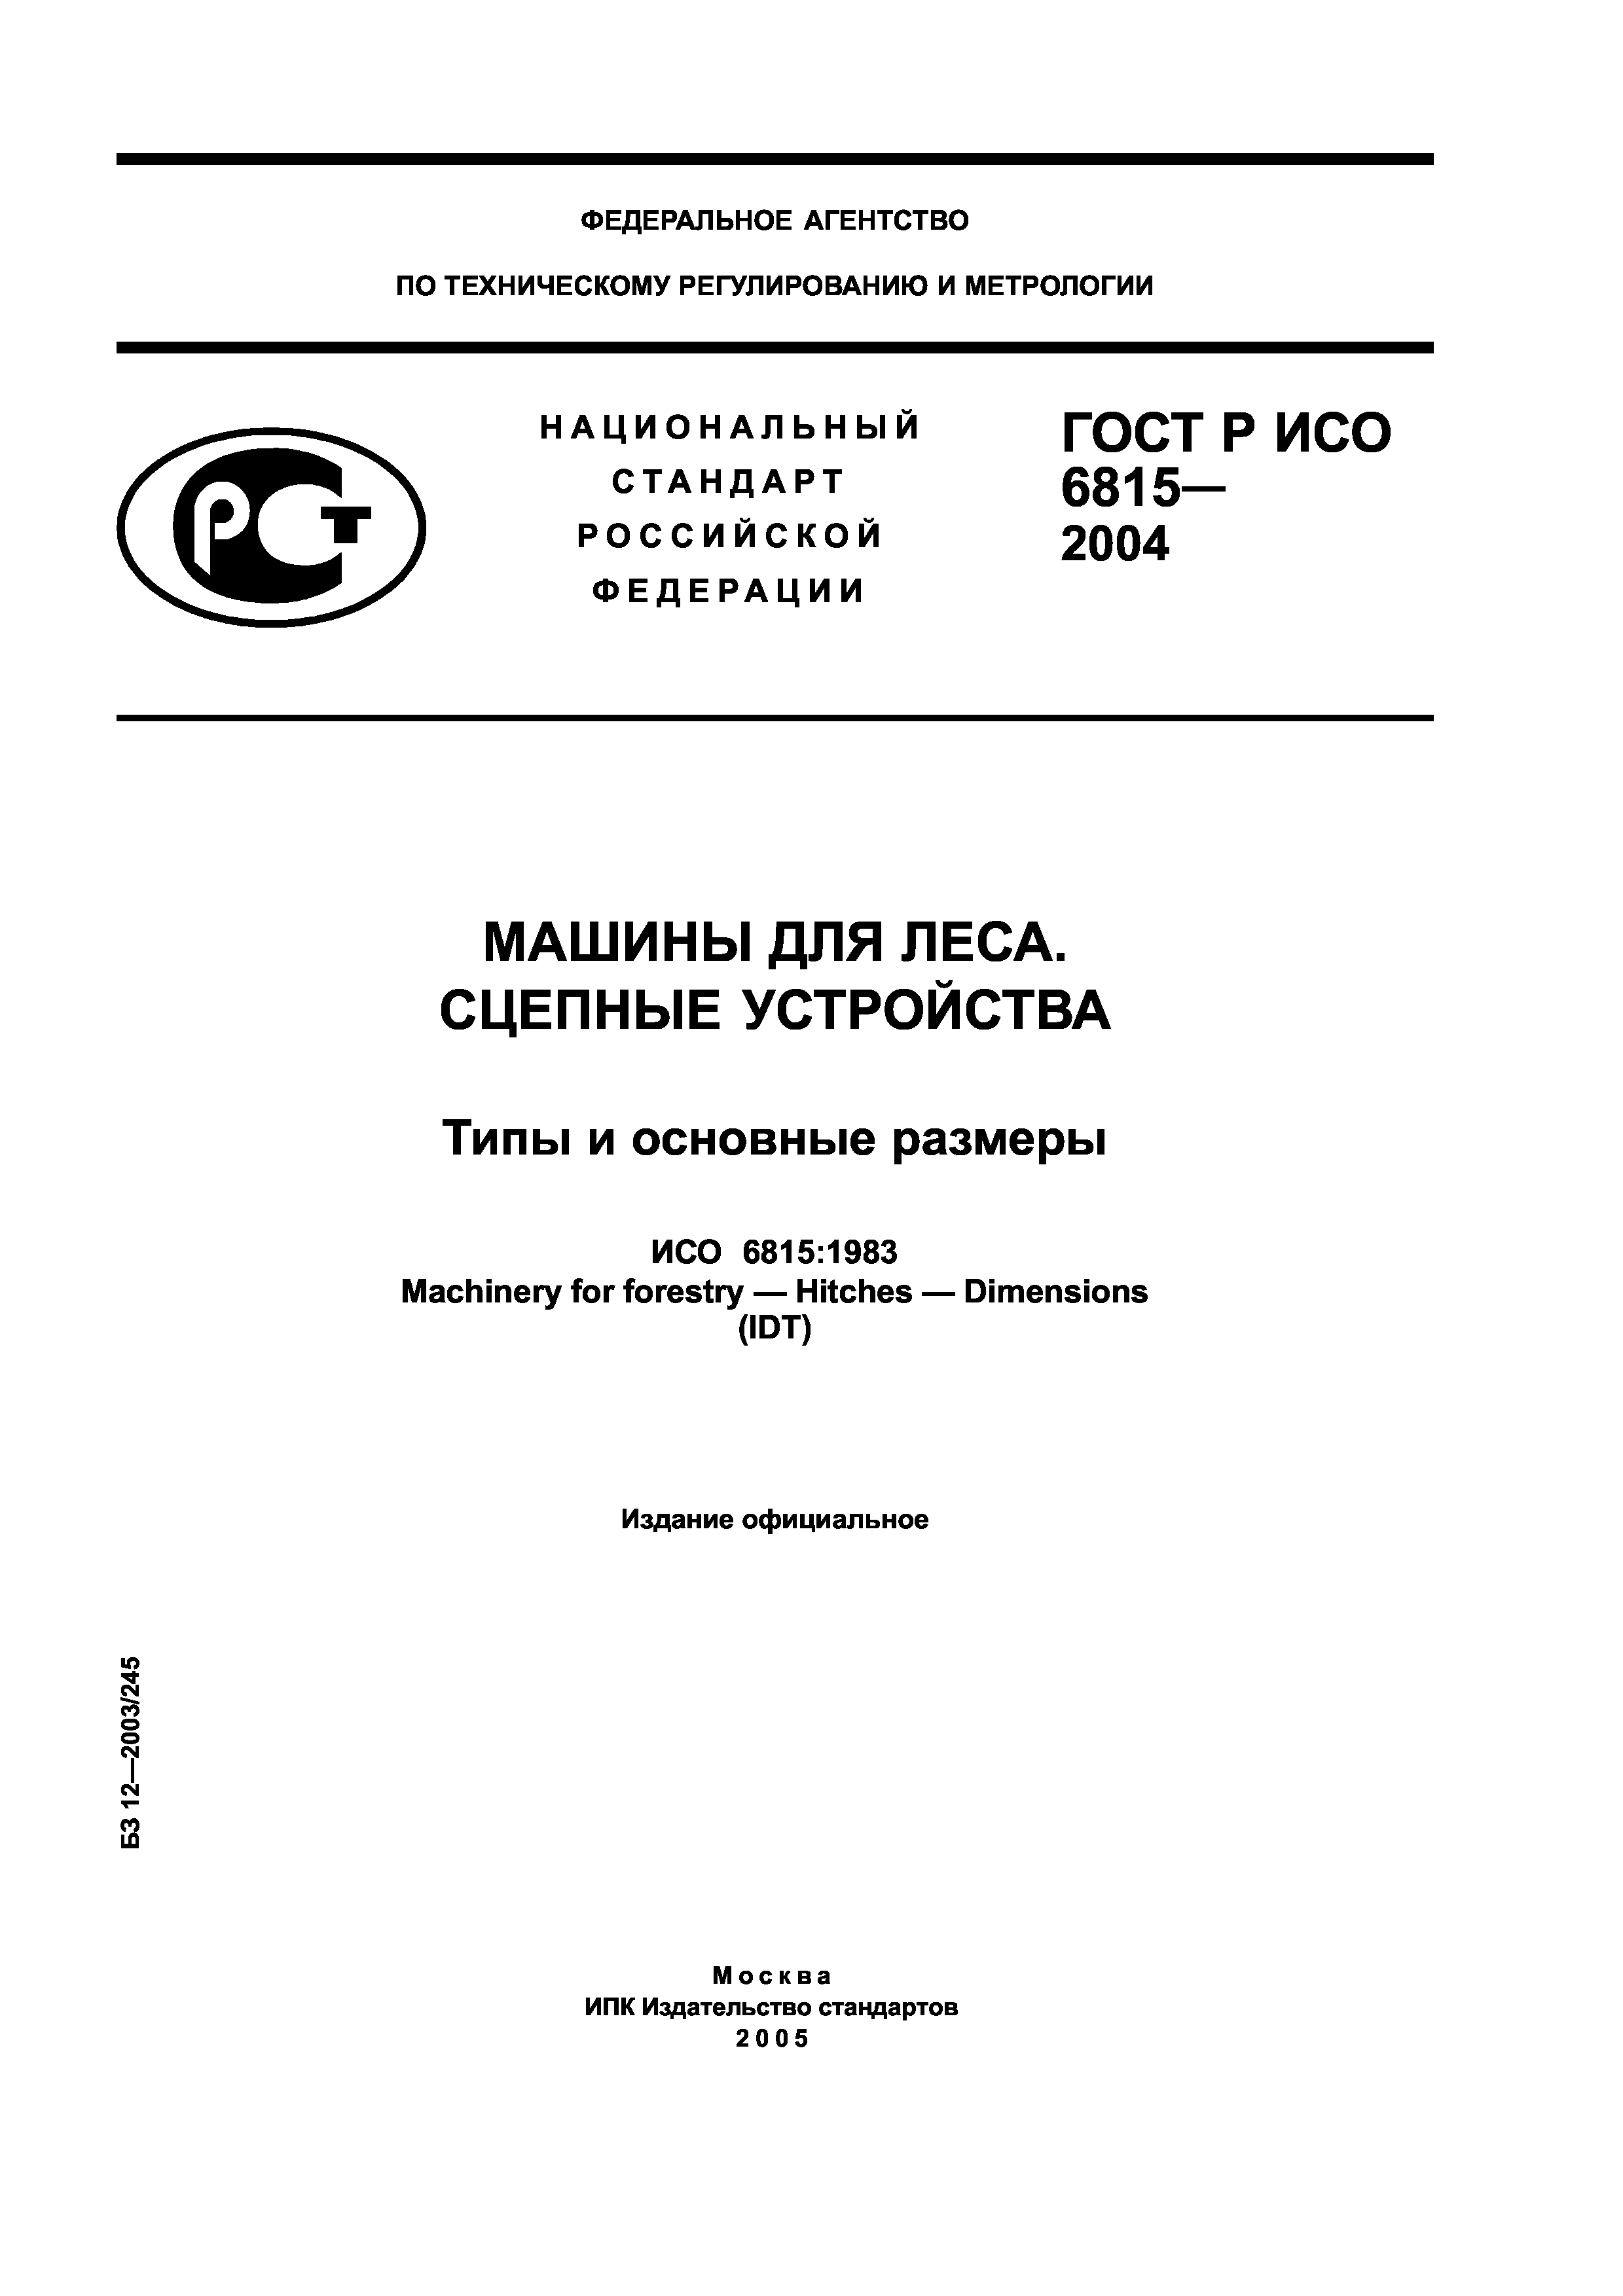 ГОСТ Р ИСО 6815-2004